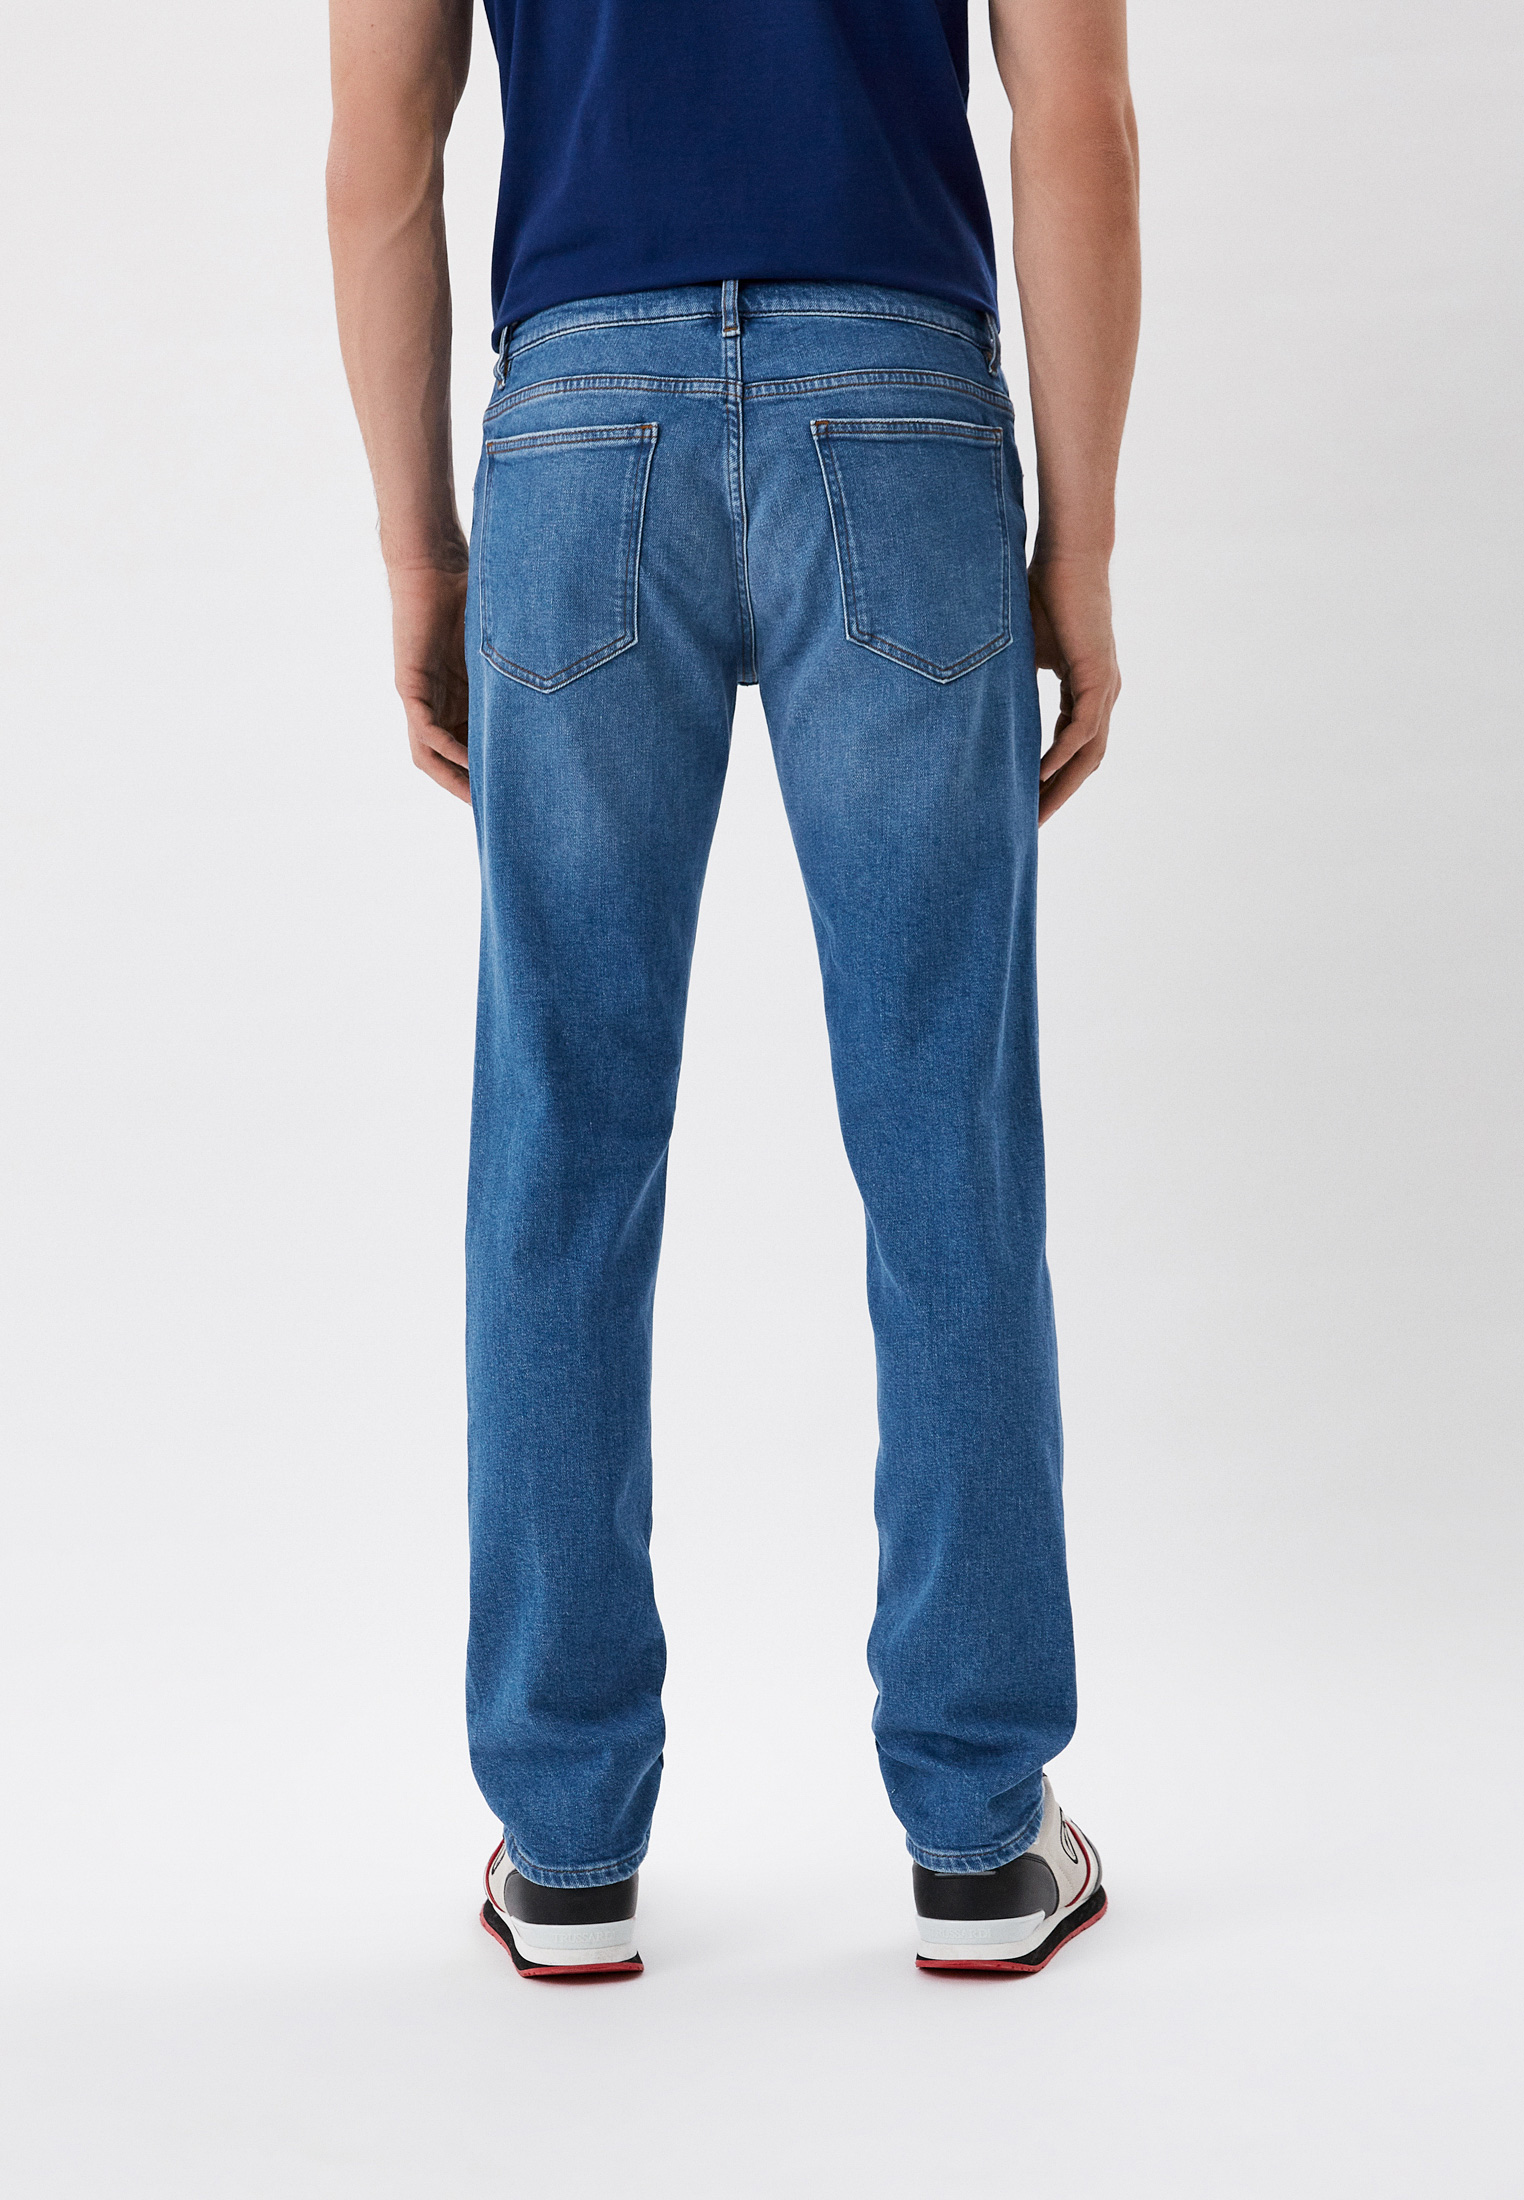 Мужские зауженные джинсы Trussardi (Труссарди) 52J00000-1T005803: изображение 3